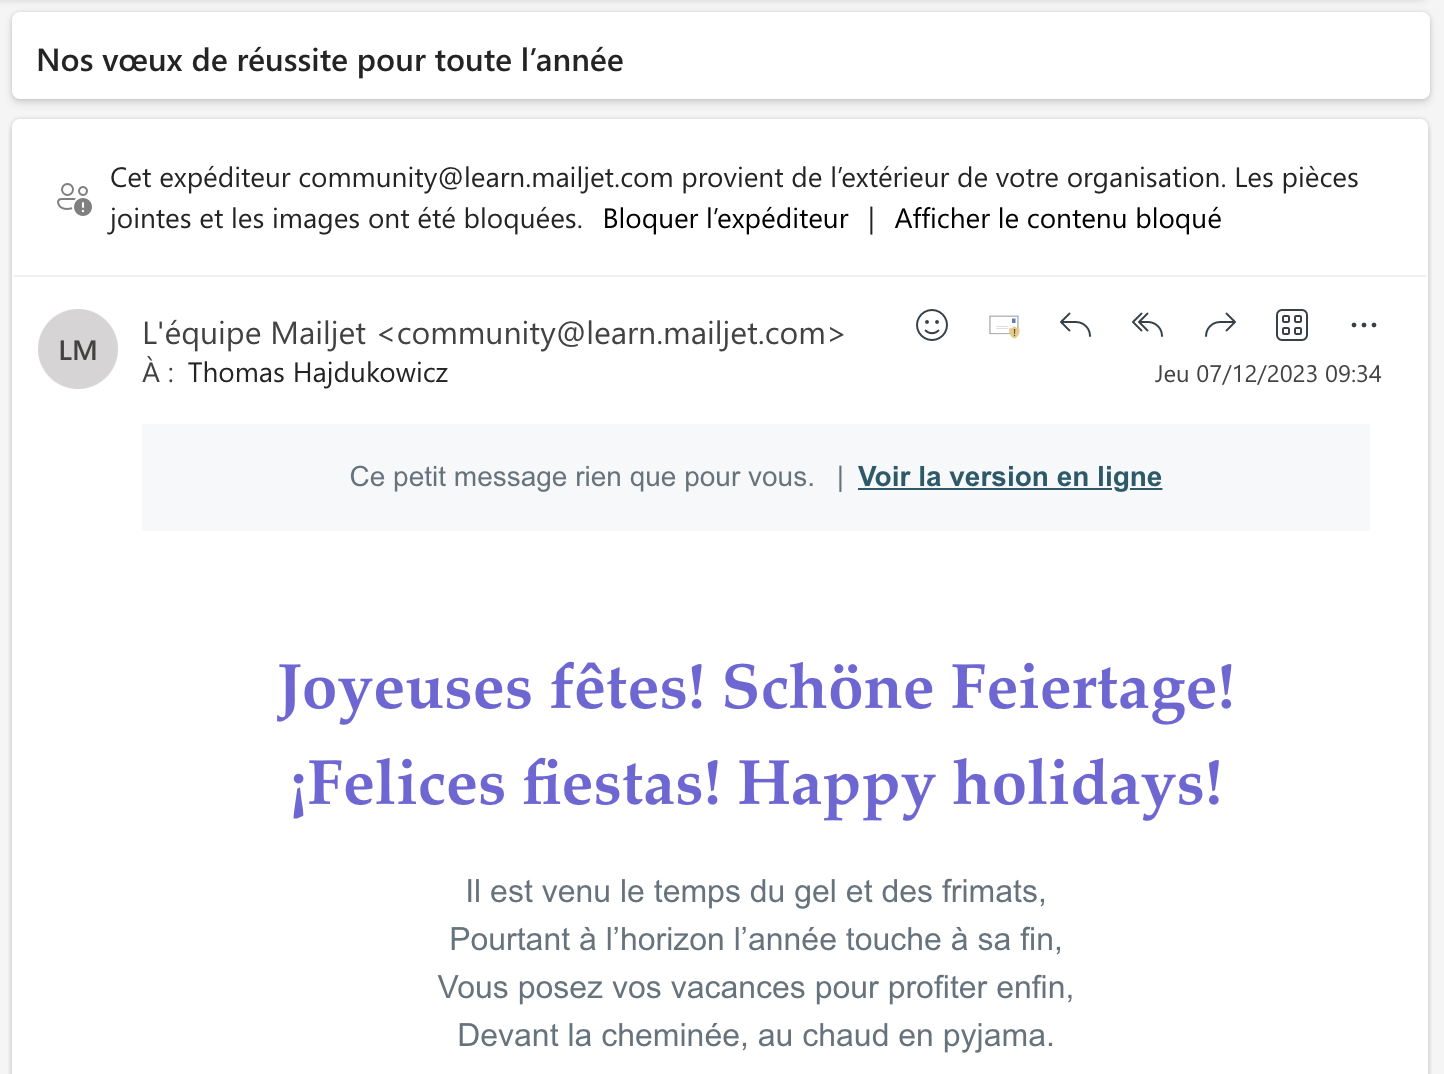 Capture d’écran de l’email envoyé par Mailjet pour souhaiter de joyeuses fêtes à ses abonnés